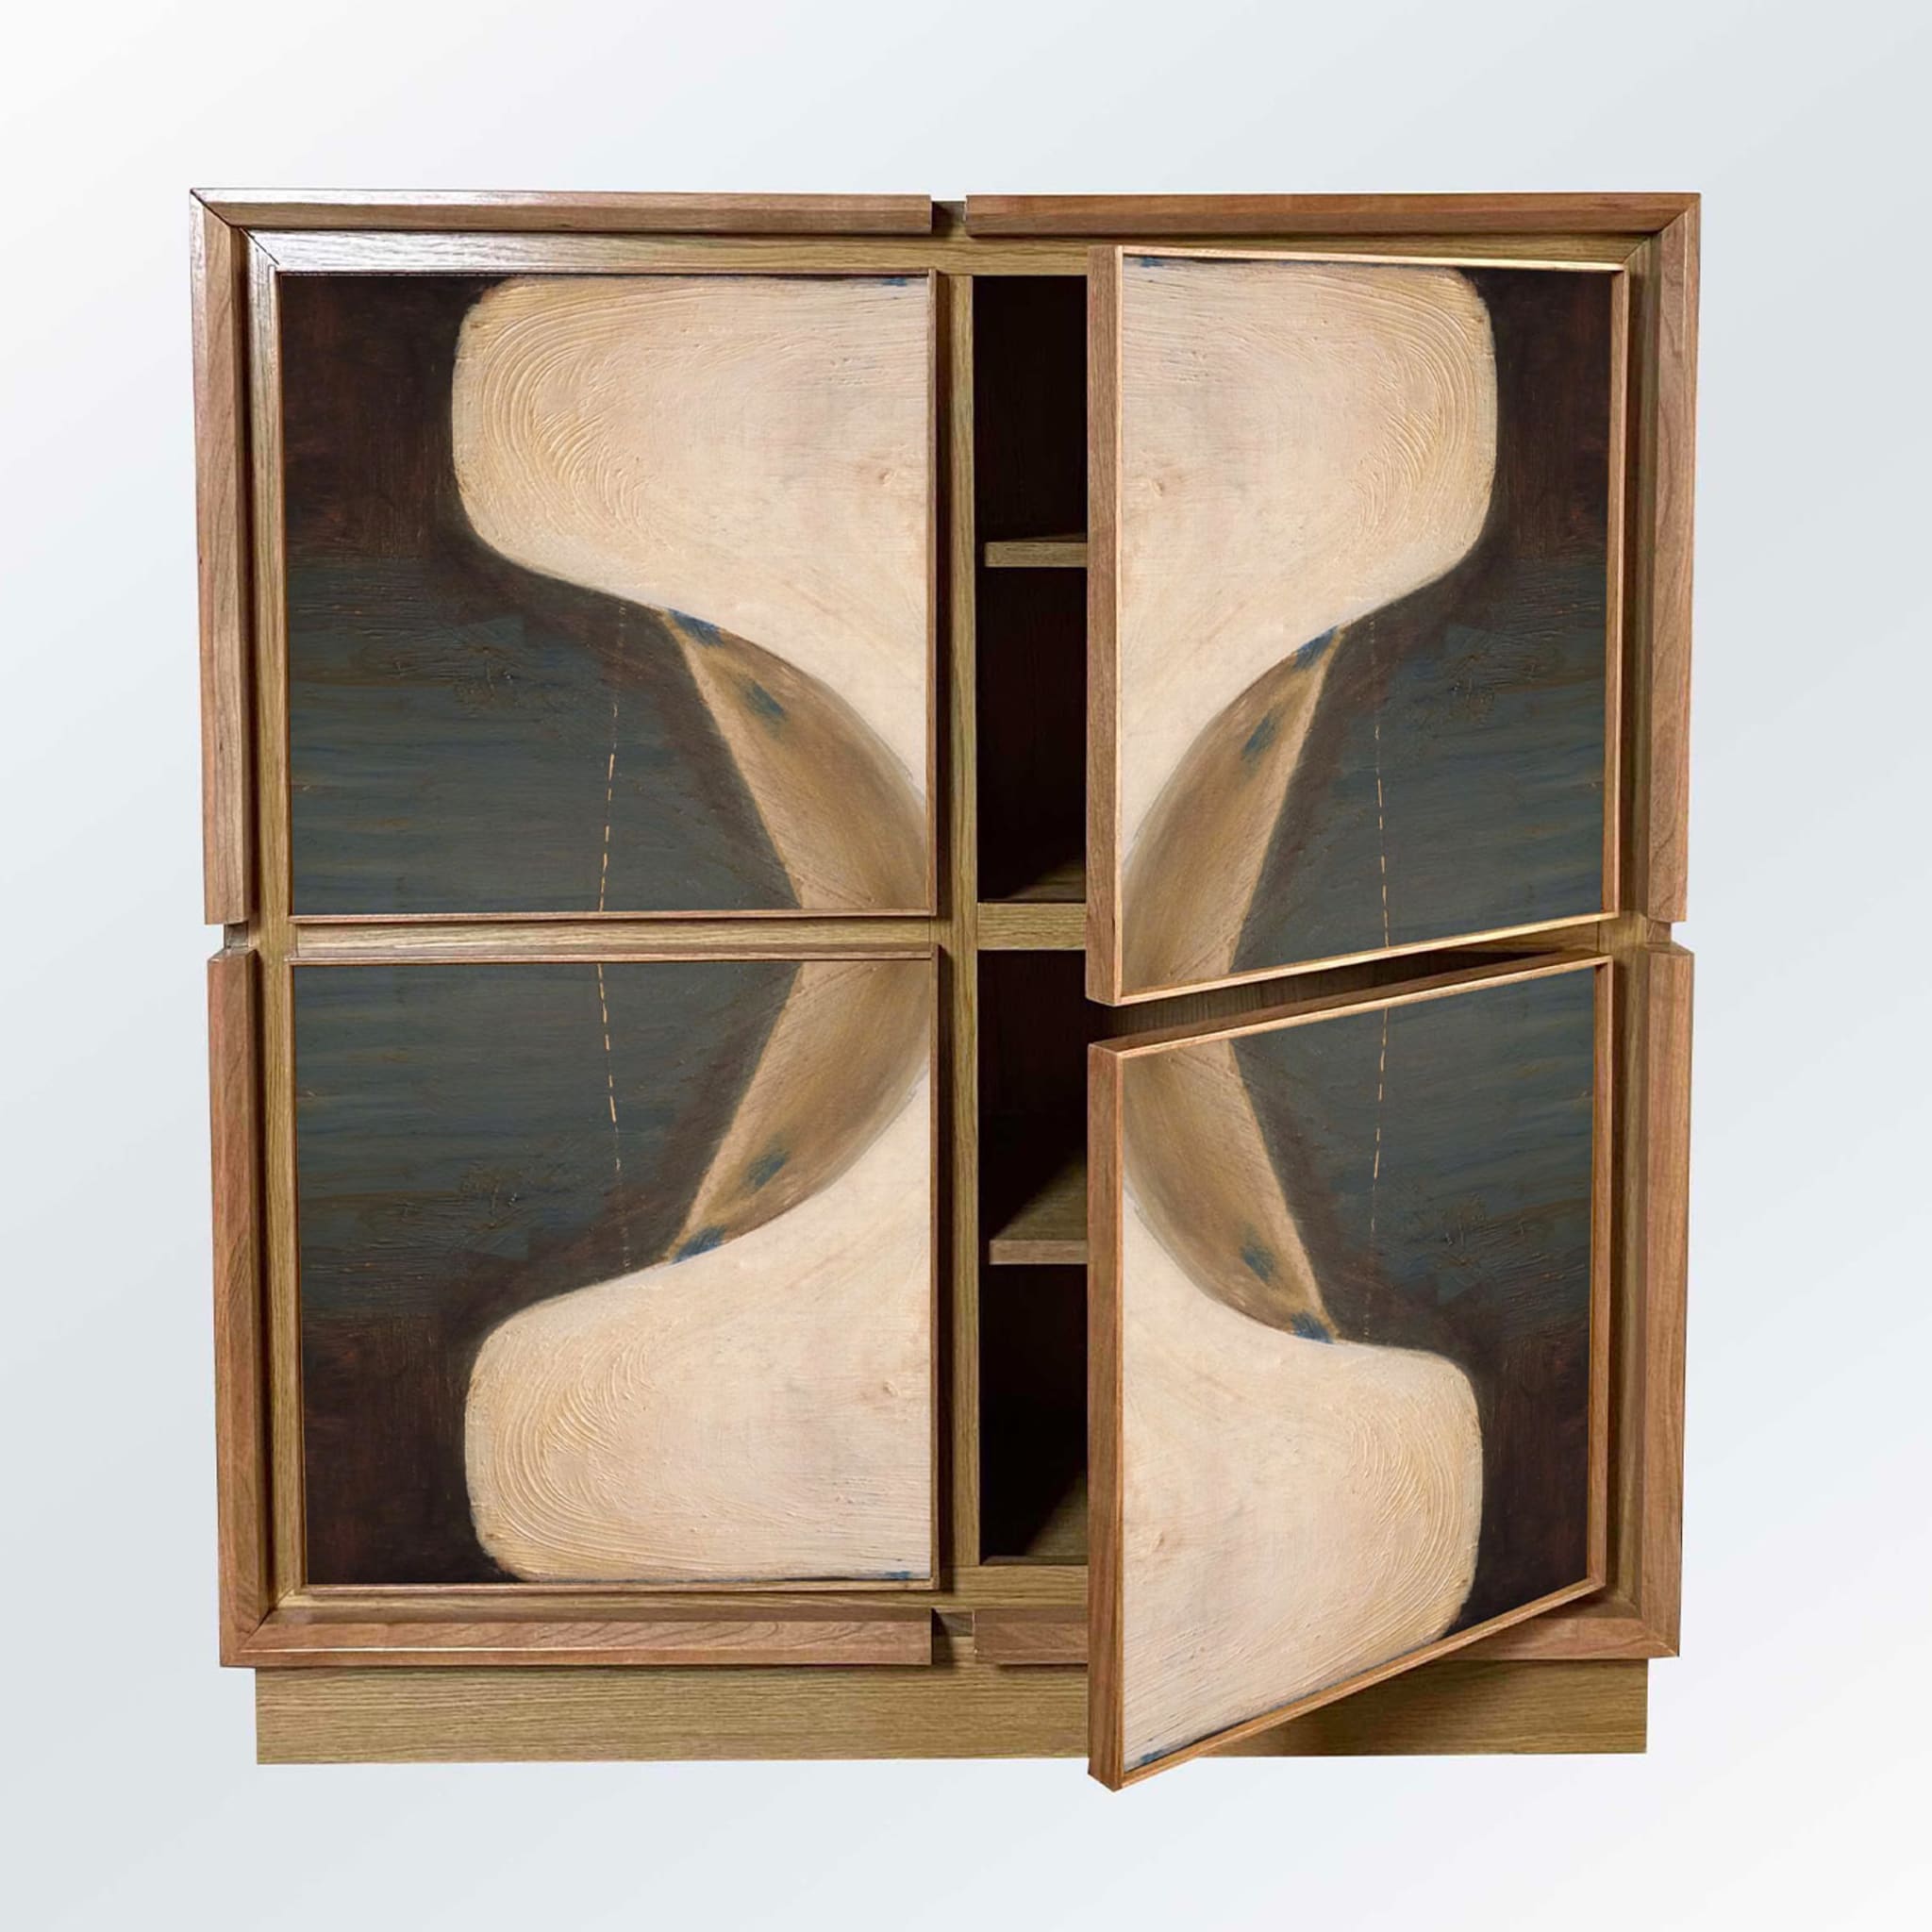 Astratta Tre Cabinet by Mascia Meccani - Alternative view 2